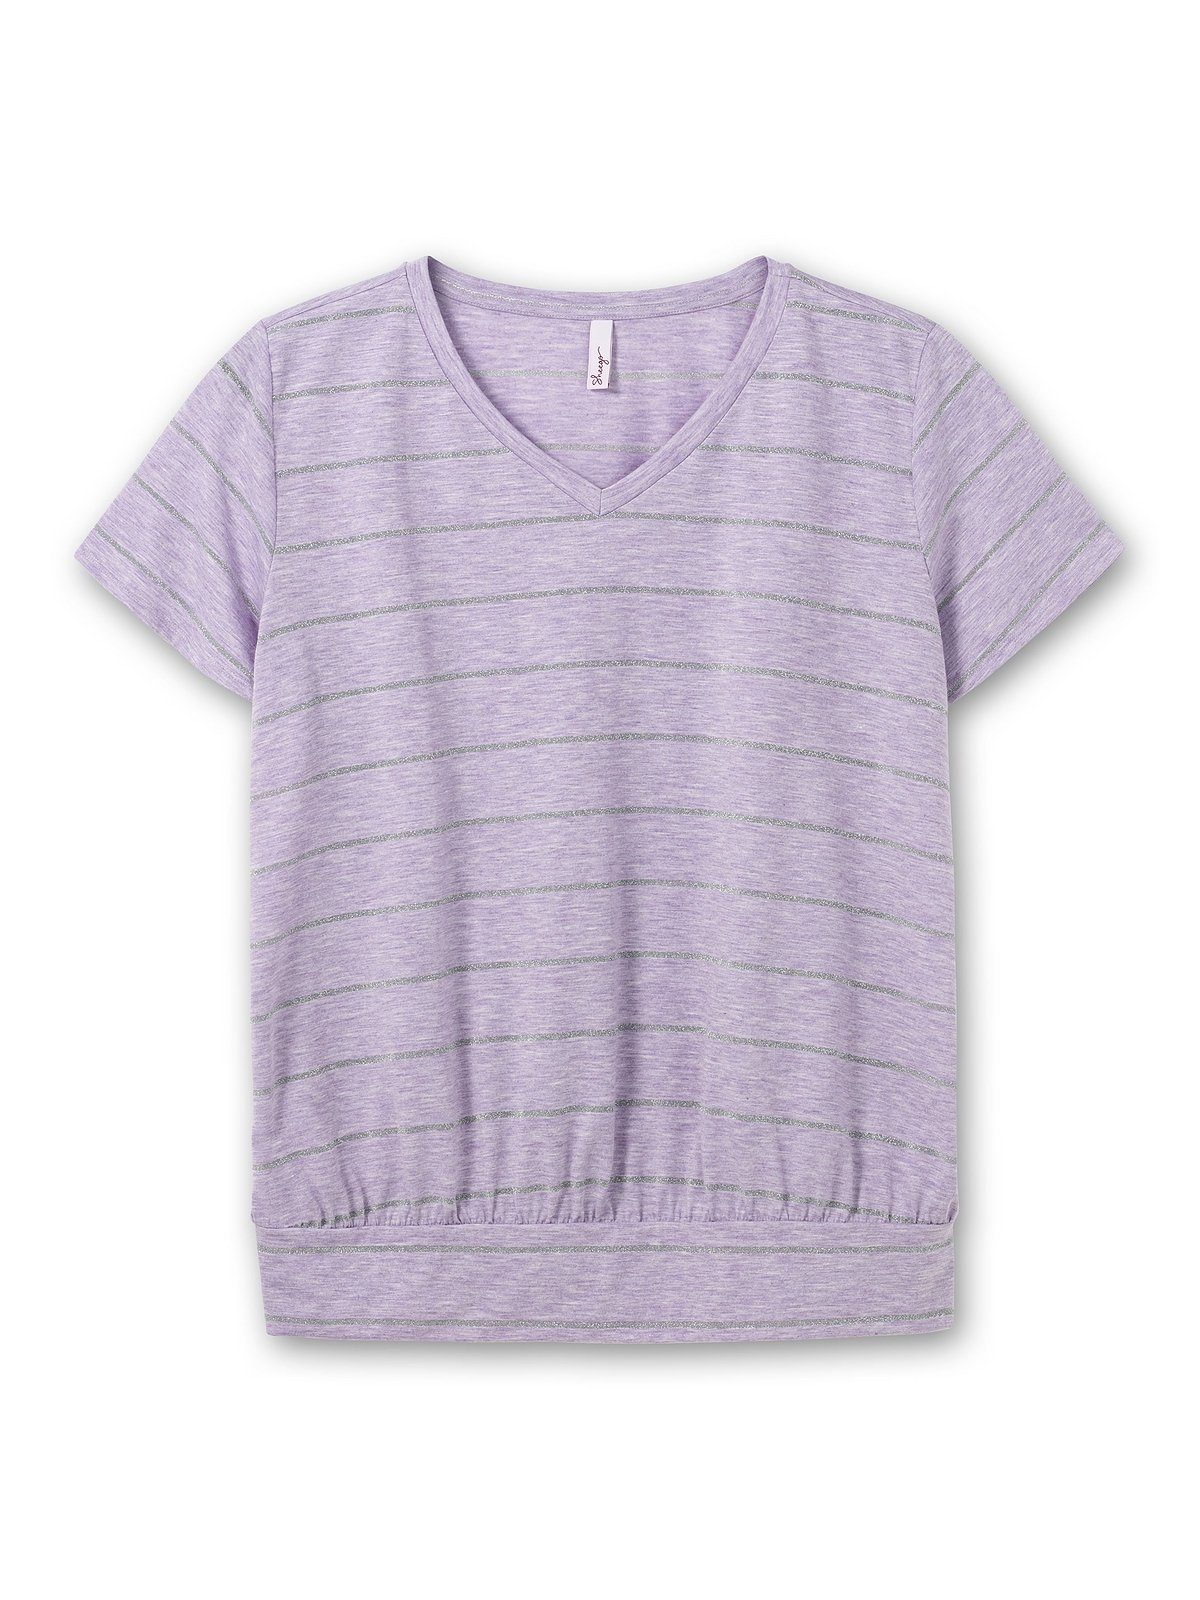 Sheego T-Shirt Große Größen mit meliert Flügelärmeln und hellflieder Glitzergarn